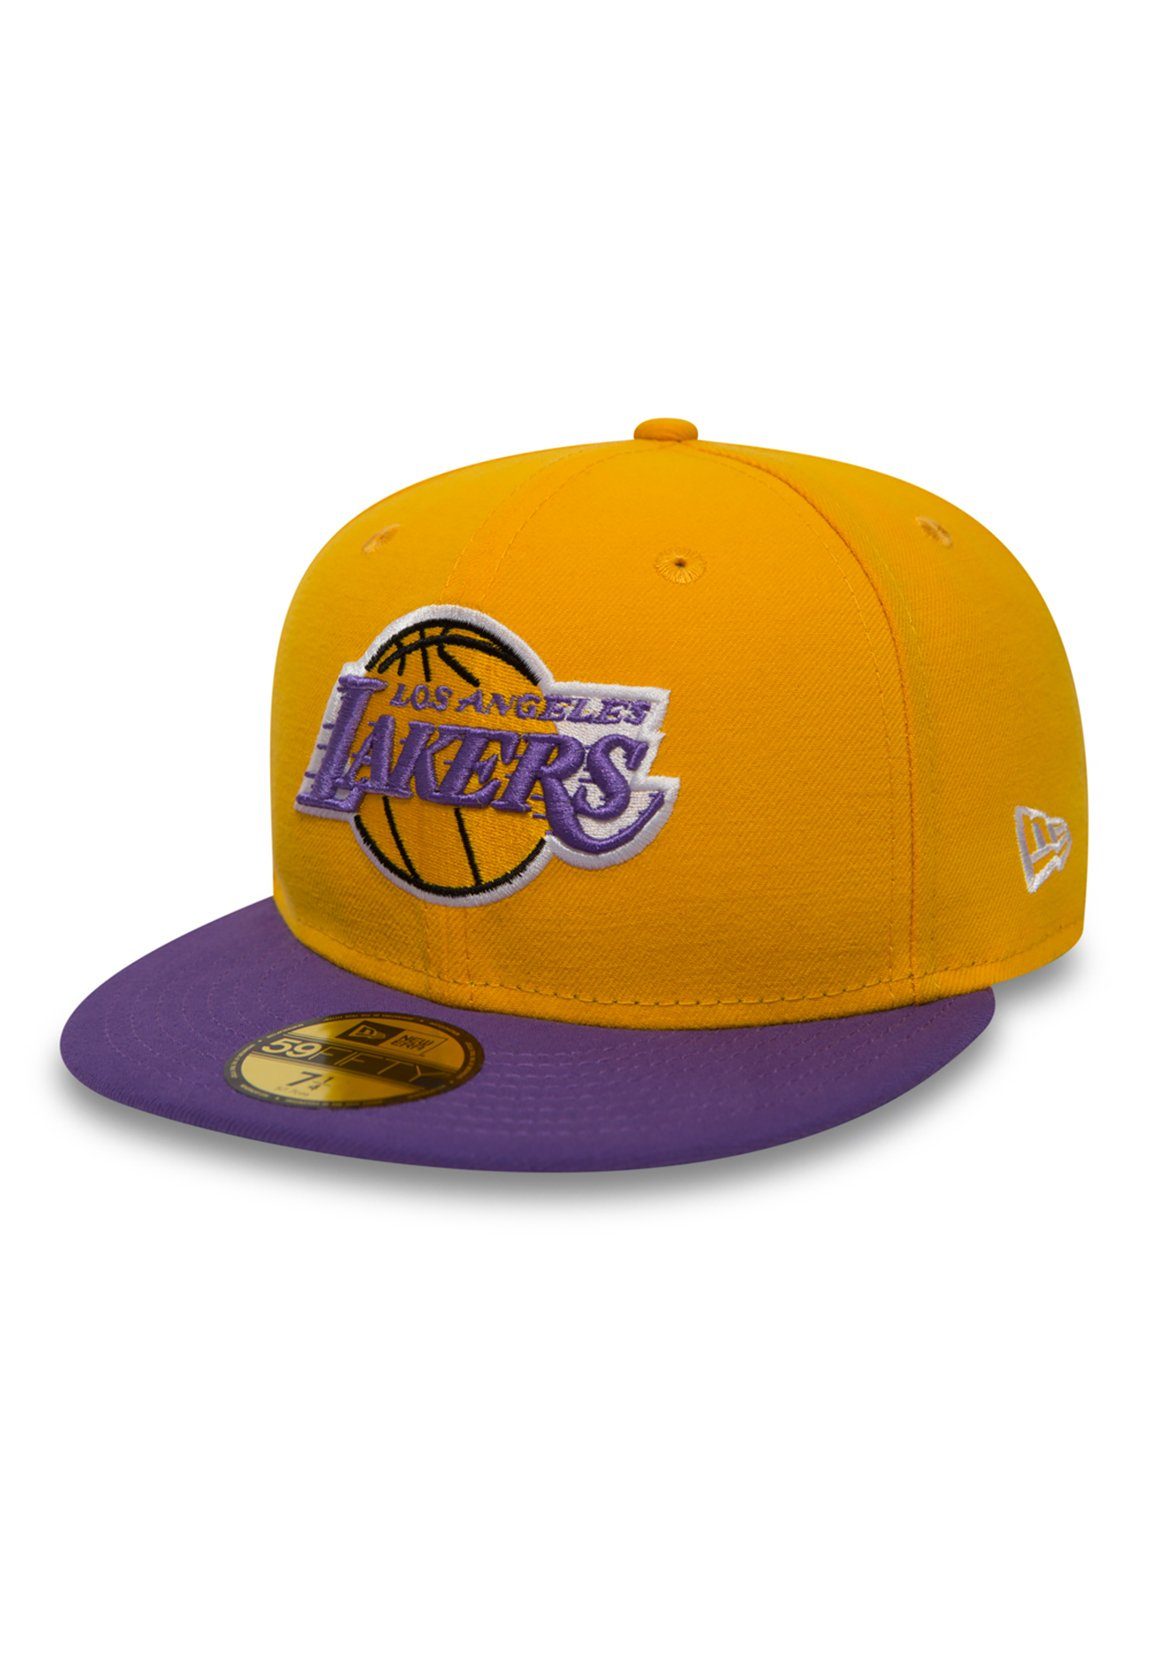 New Era Baseball Cap New Era 59Fiftys Cap - LA LAKERS - Yellow-Purple gelb